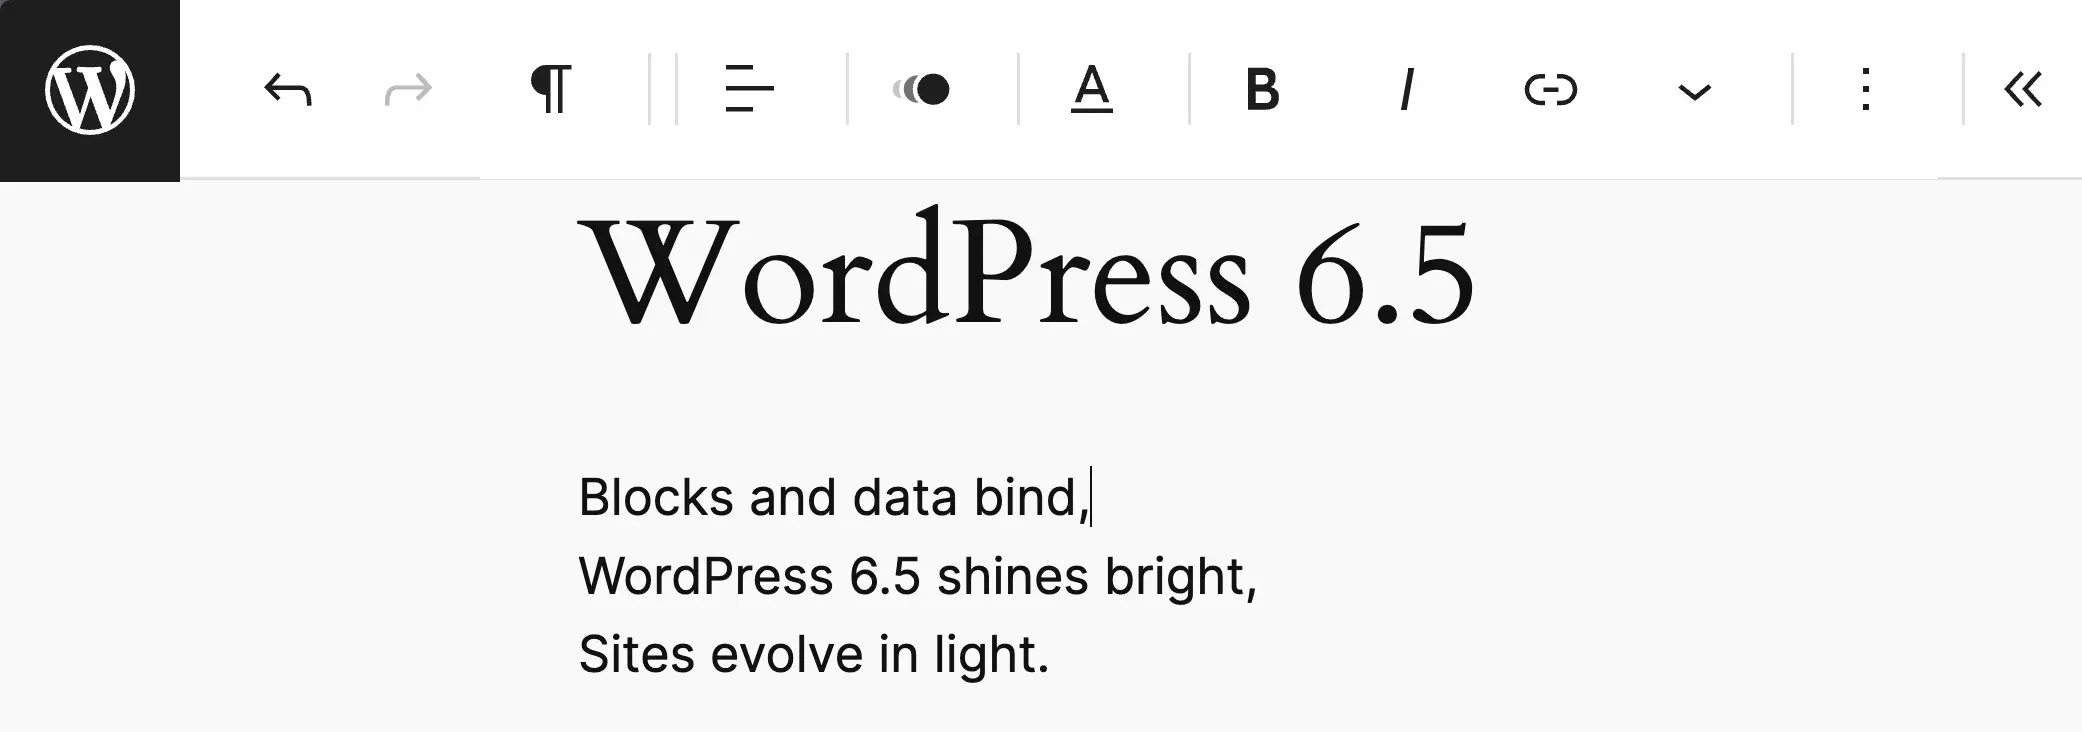 WordPress 6.5 เปิดใช้งานโหมดปลอดสิ่งรบกวน แสดงให้เห็นแถบเครื่องมือด้านบน